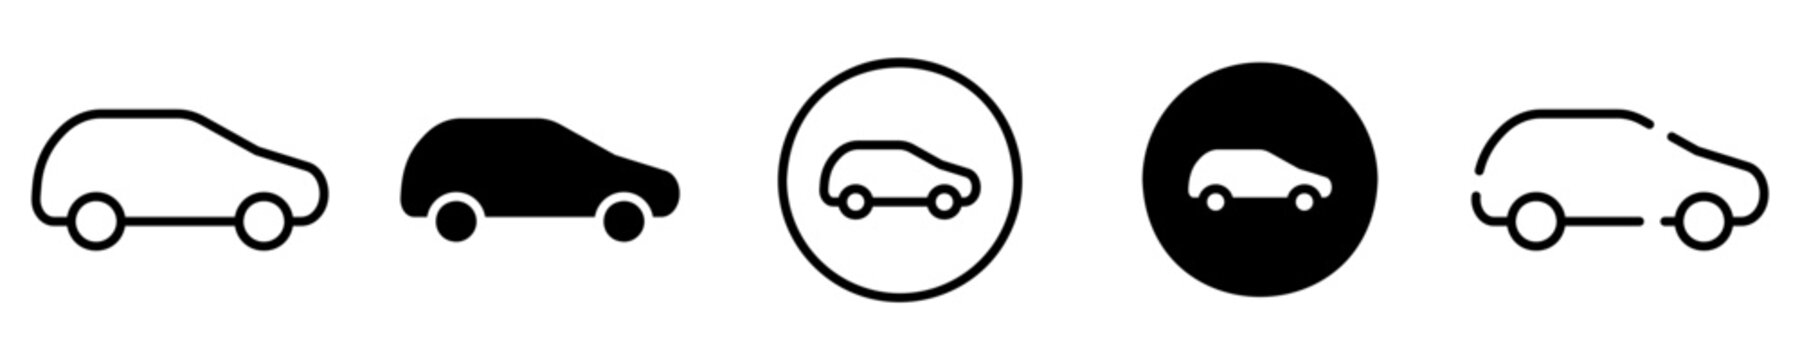 Conjunto de iconos de automóvil. Carro, coche. Concepto de vehículo de transporte. Automóvil de diferentes estilos